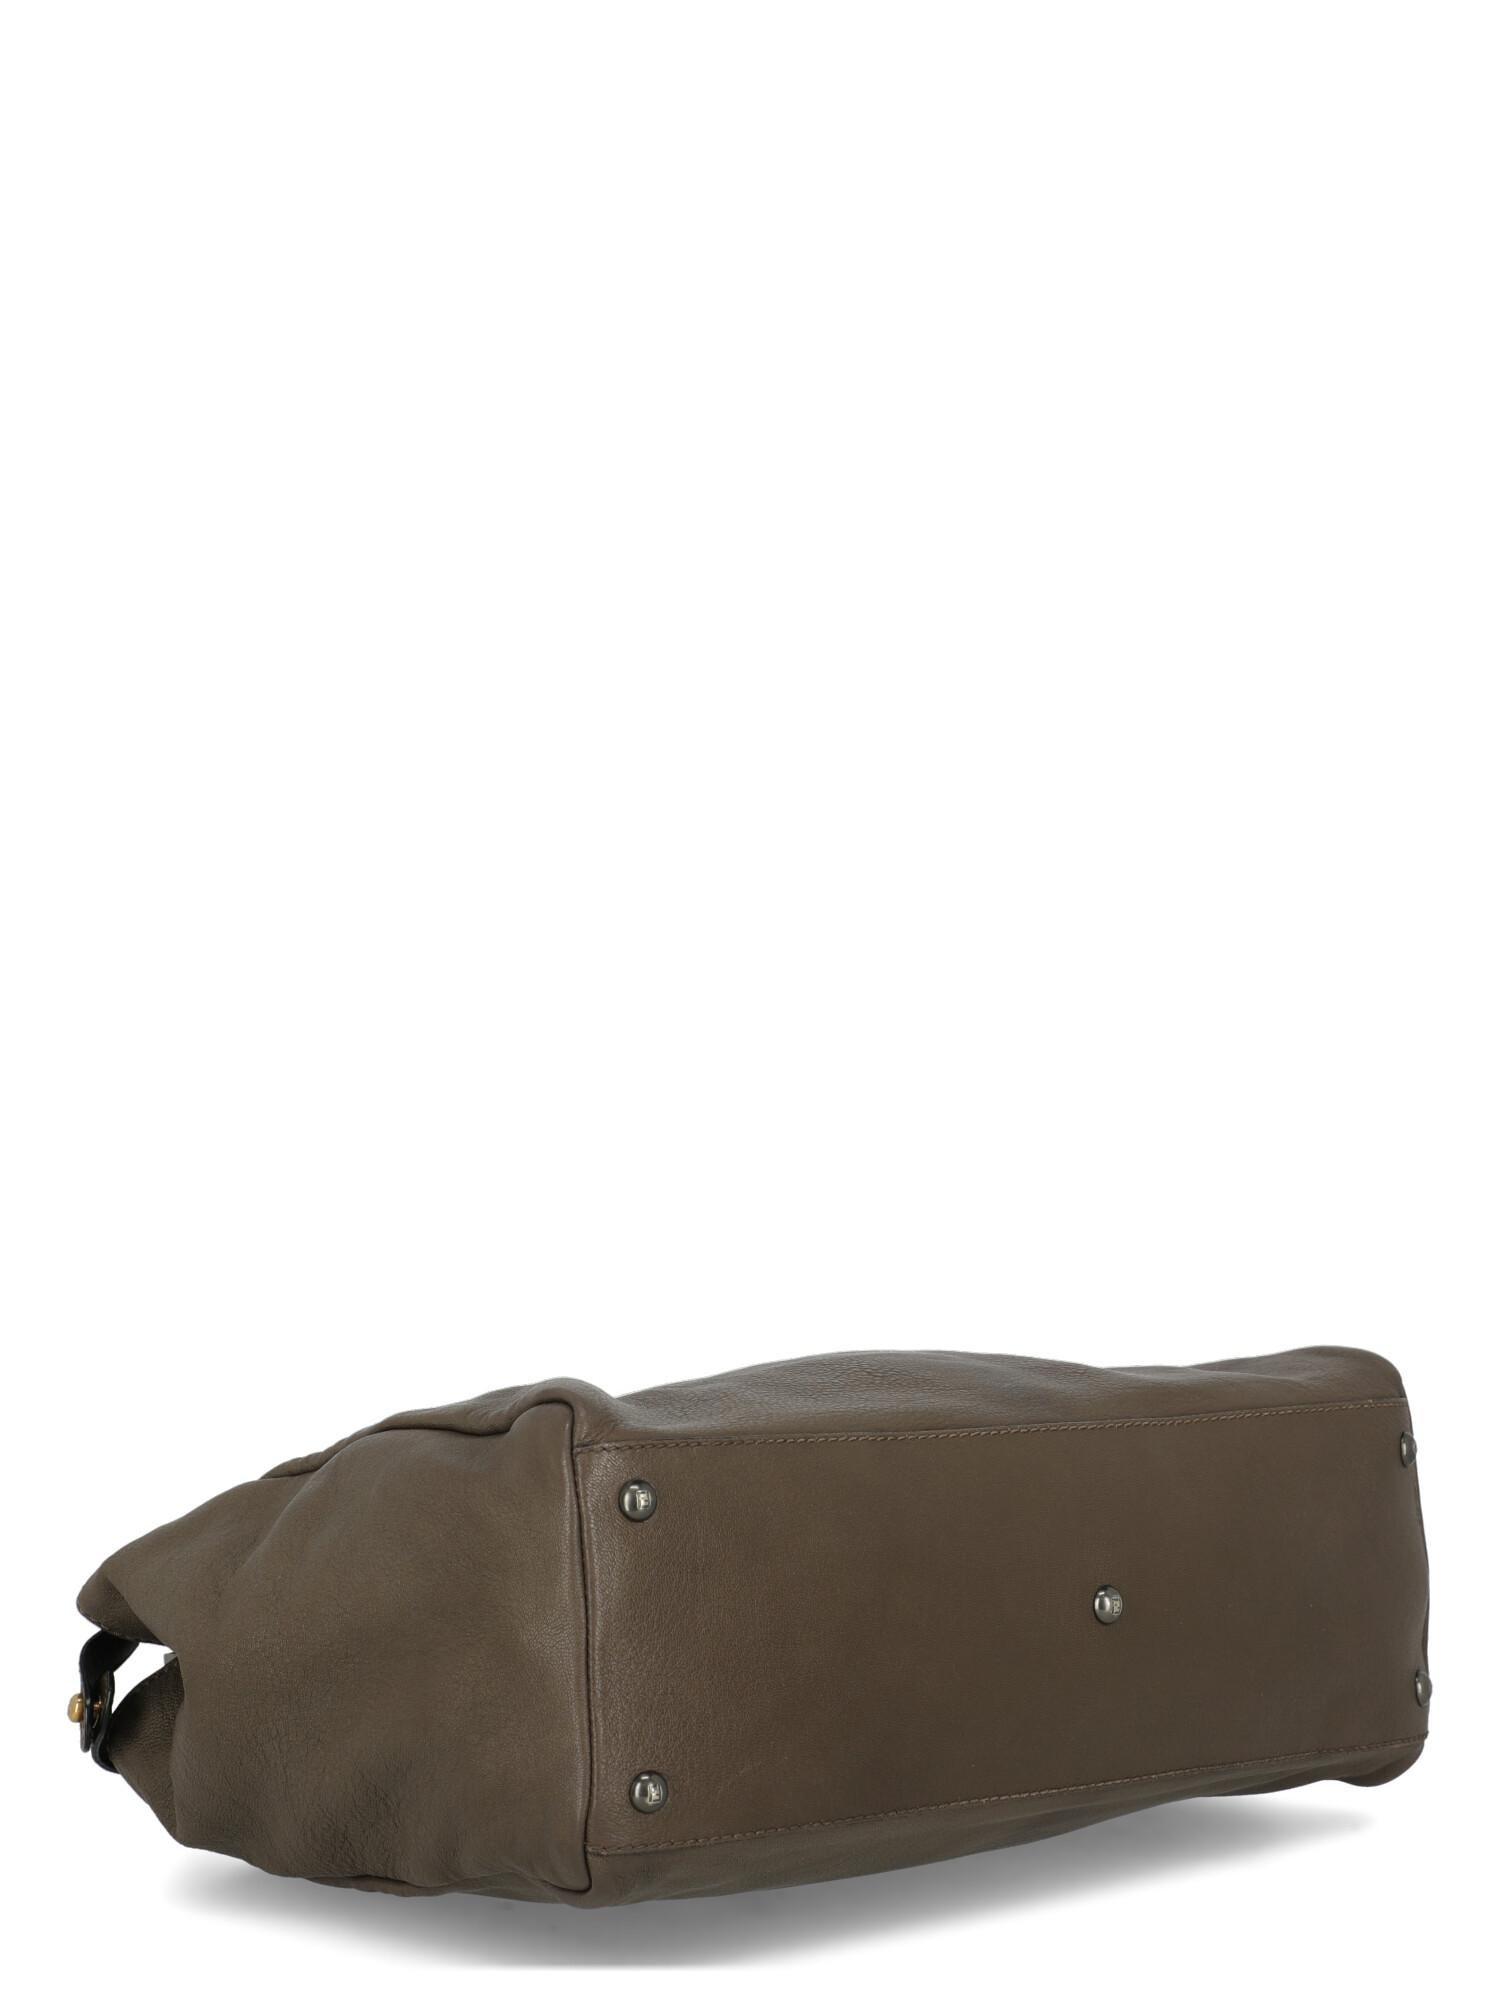 Women's Fendi Women  Handbags Peekaboo Brown Leather For Sale